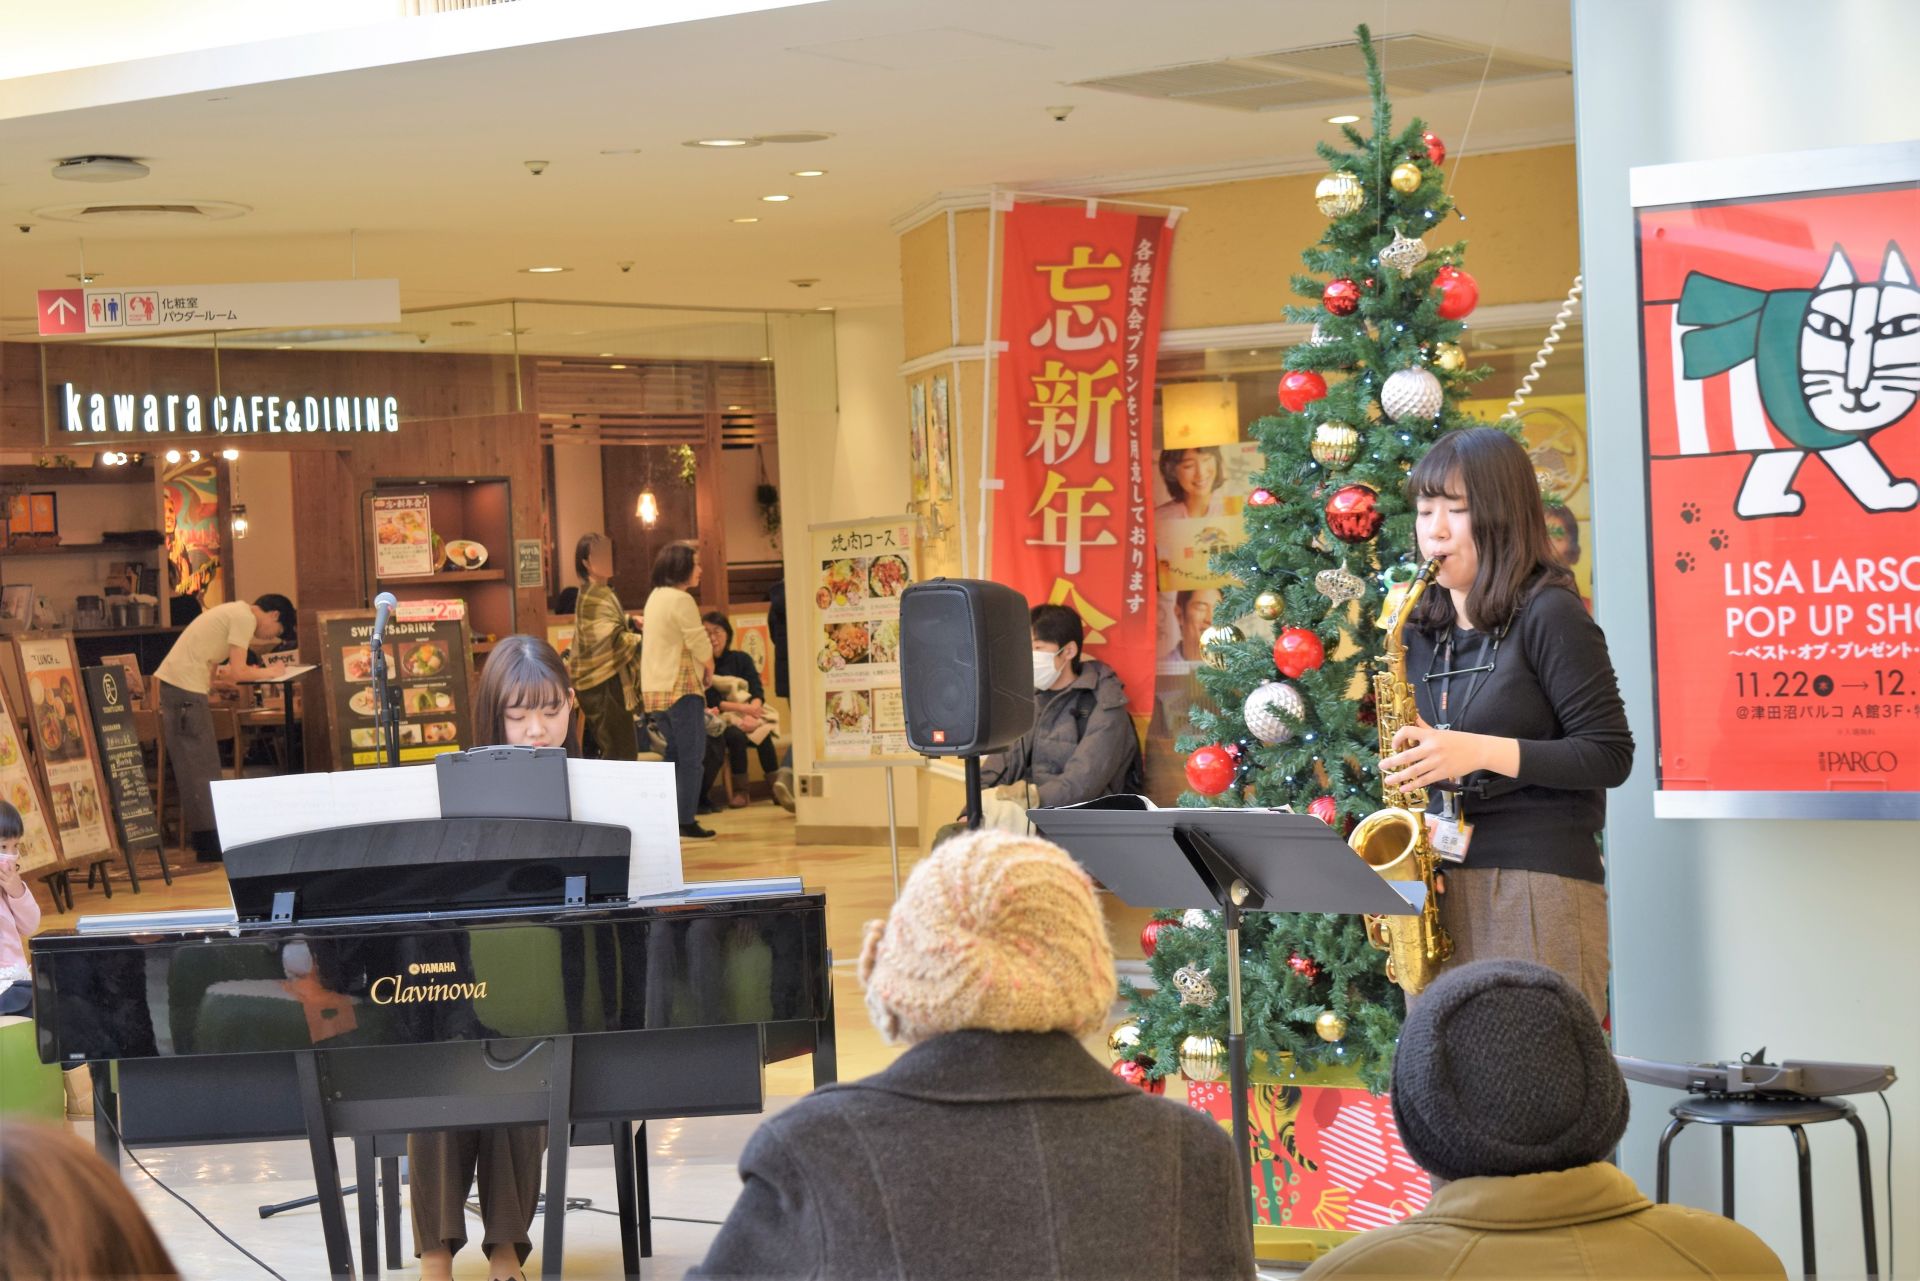 *毎月開催！スイートタイムコンサートをレポートいたします。 12月15日(土)にスイートタイムコンサートを開催いたしました‼]]津田沼パルコ店では、毎月6階レストランフロアにてインストラクターによる演奏会を行っています。]]今年最後のインストラクター演奏は、サックス、エアロフォン、ピアノでクリスマス […]